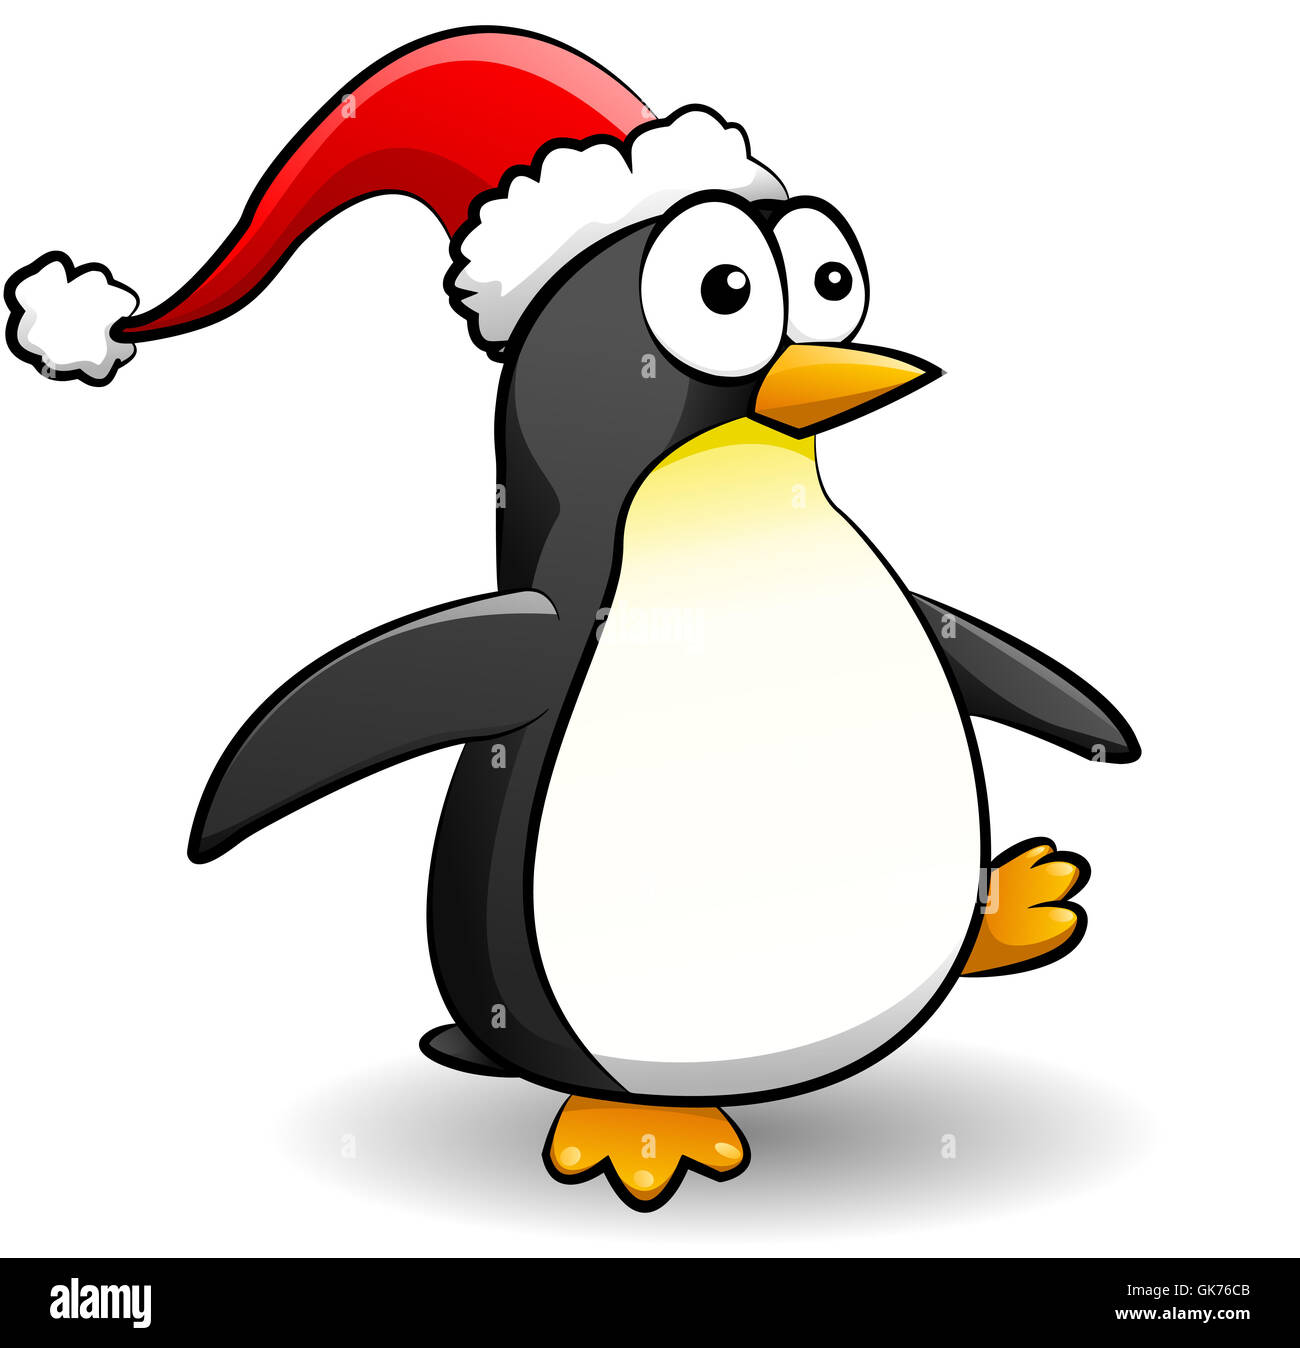 Pinguino di natale immagini e fotografie stock ad alta risoluzione - Alamy